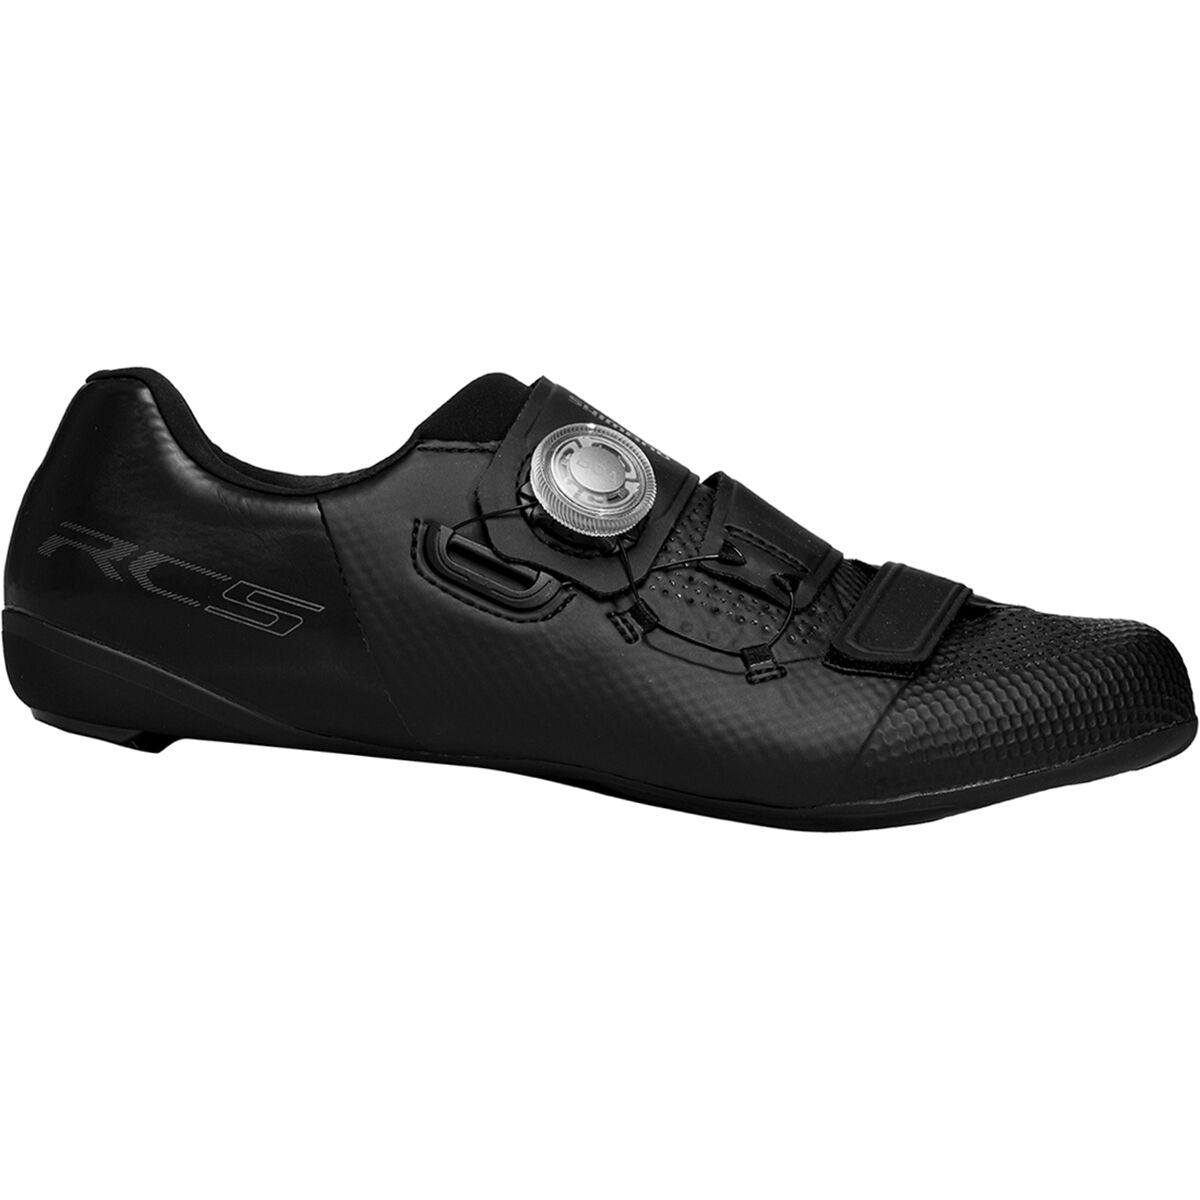 Shimano SH-RC5 Wide Cycling Shoe - Men's